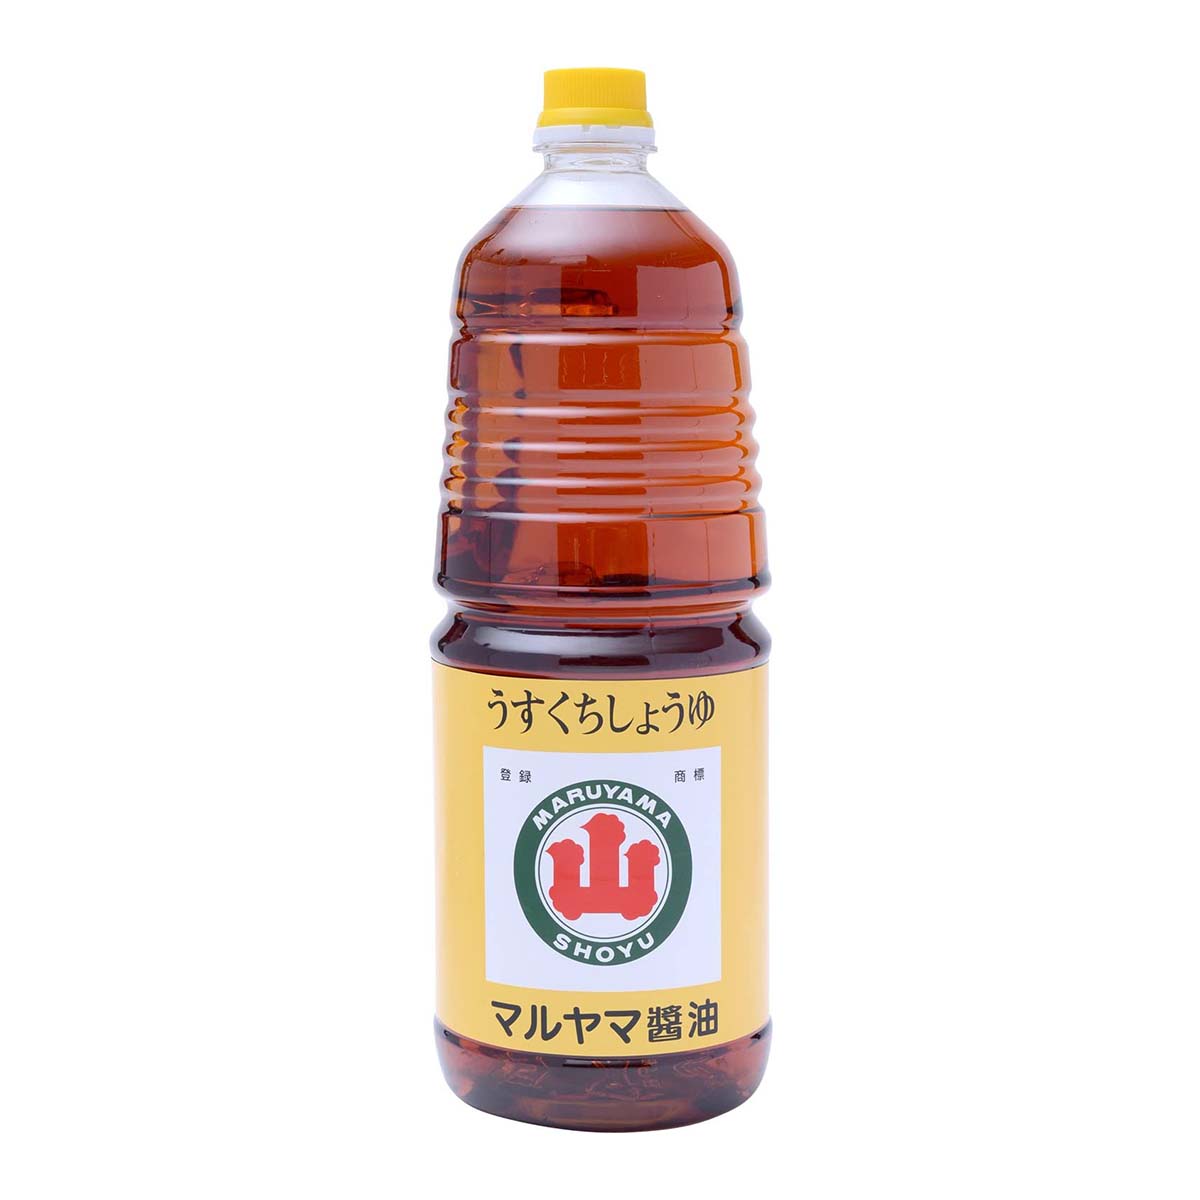 【スーパーセール価格】[マルヤマ醤油] うすくちしょうゆ 1